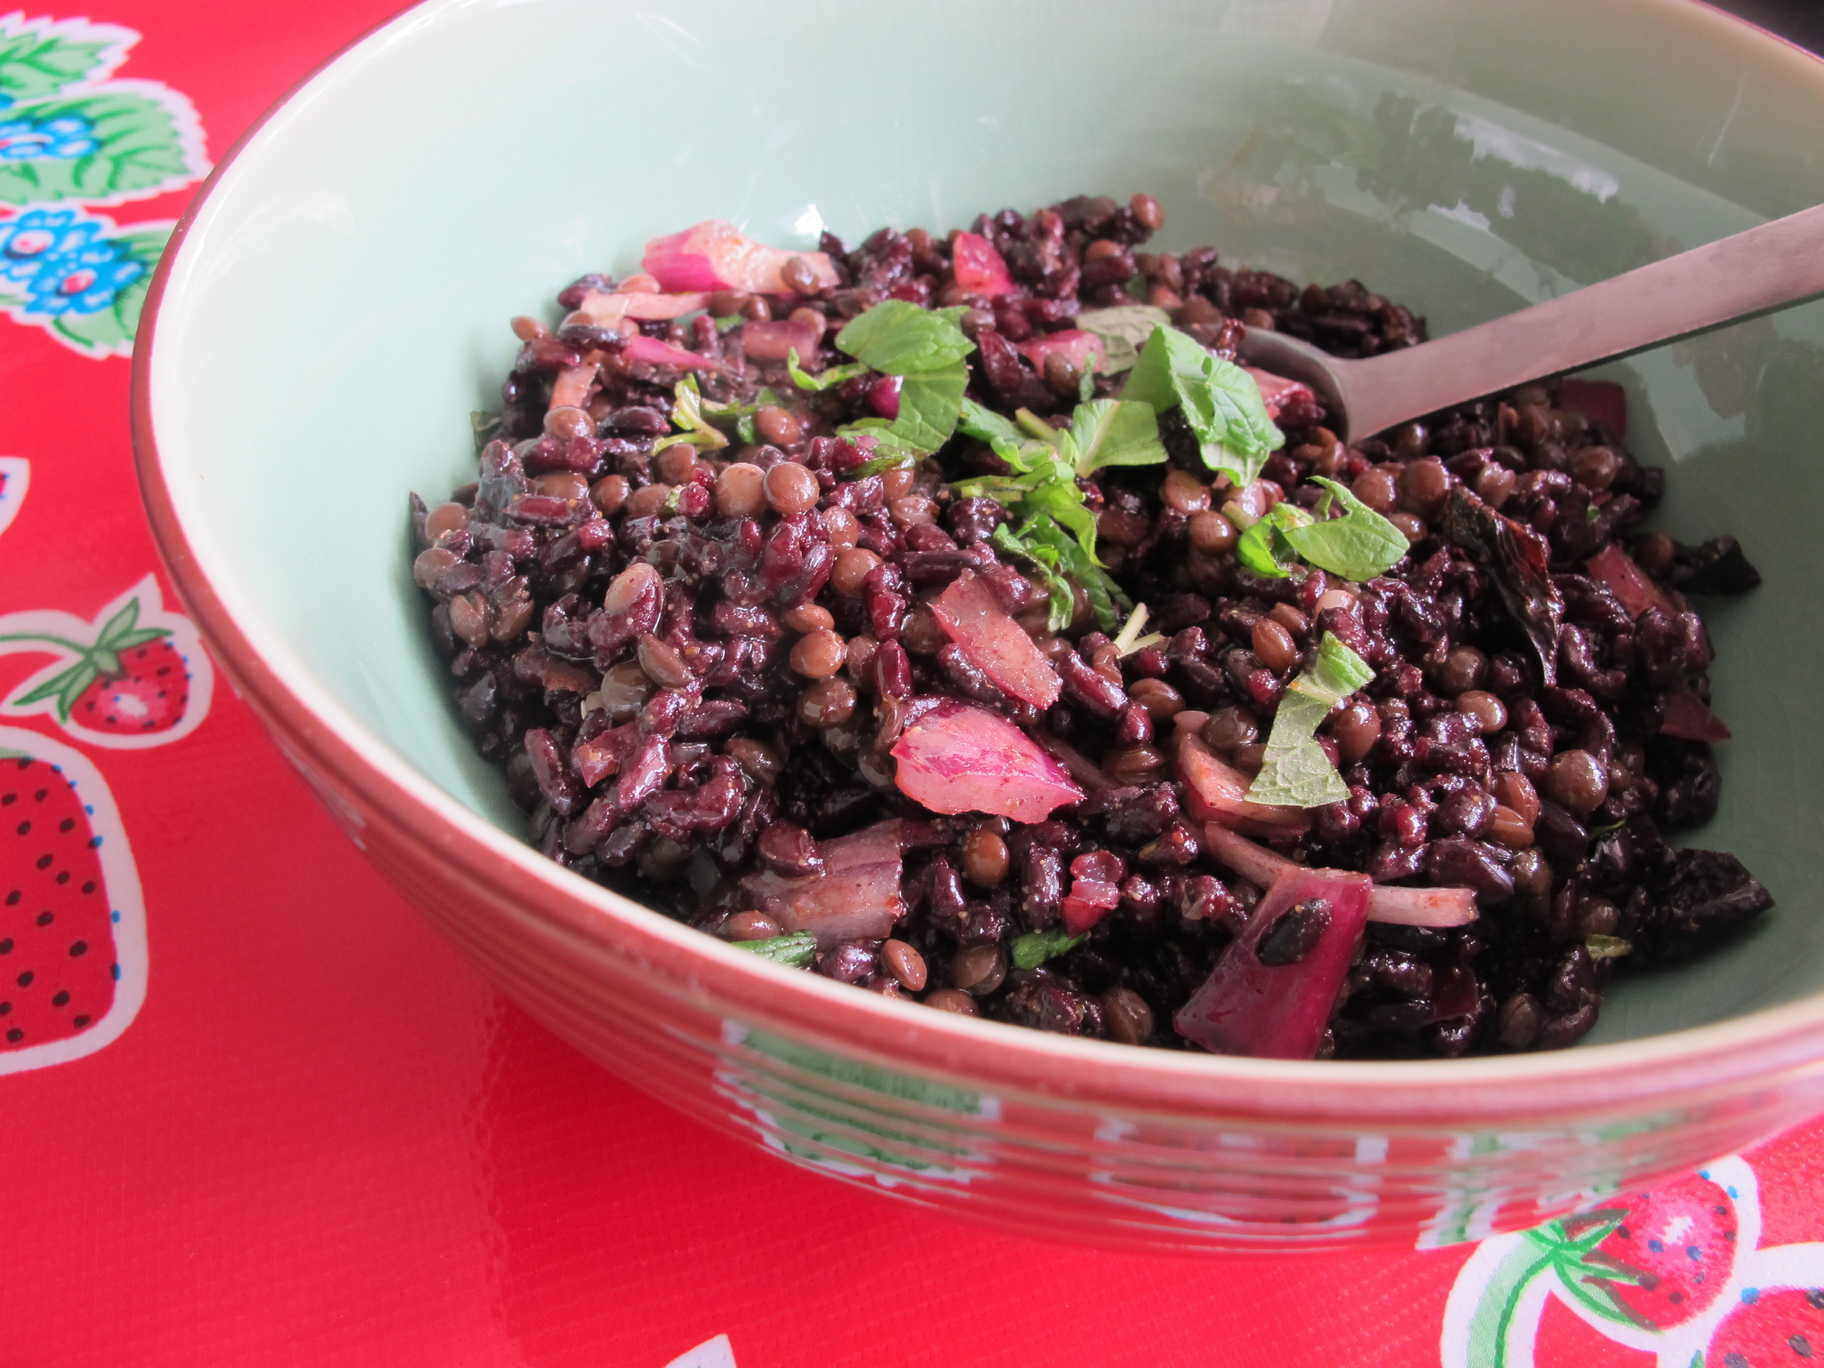 Black rice and lentil salad